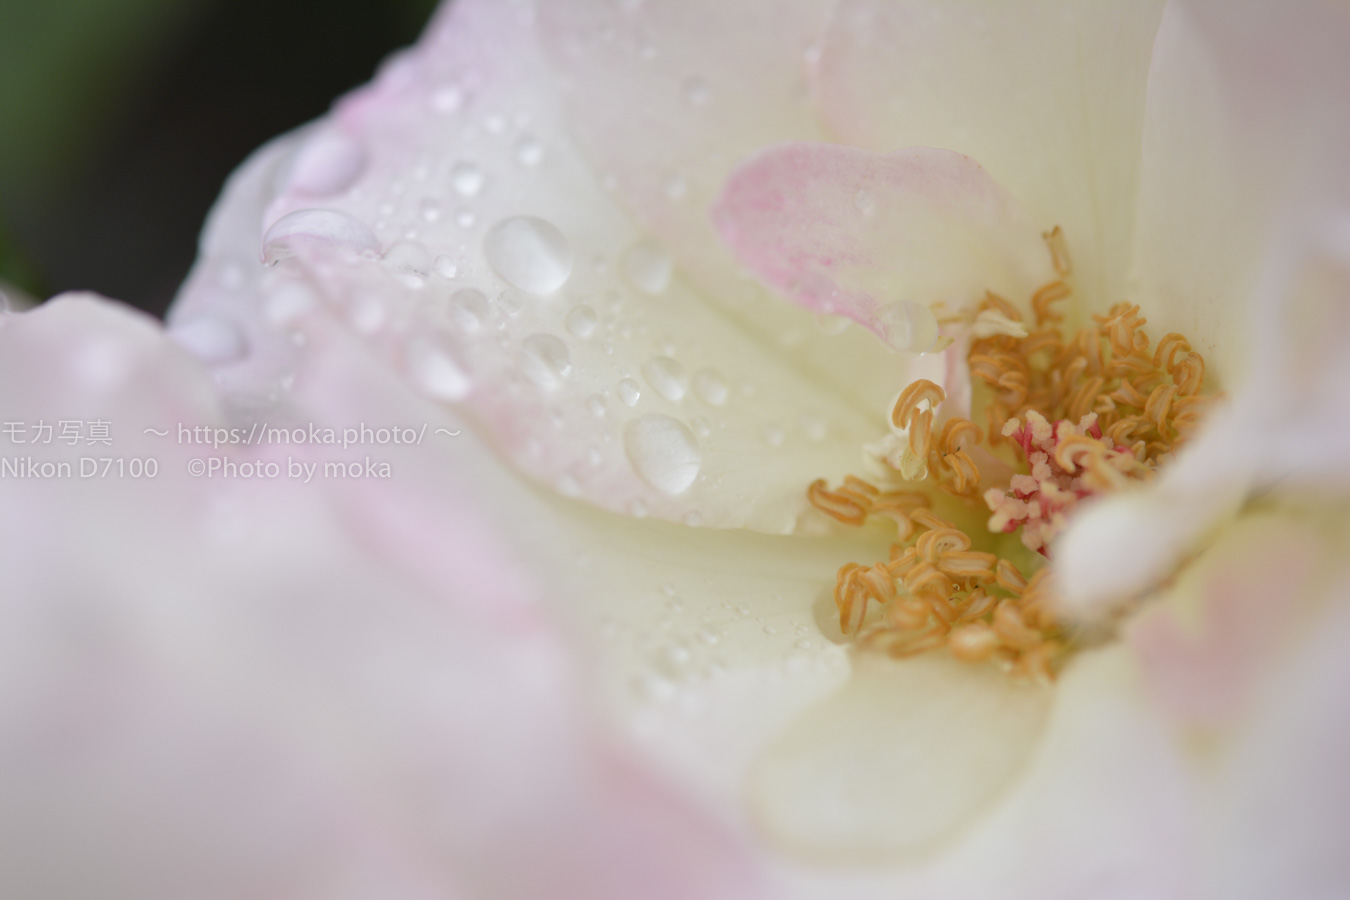 【スナップ写真】水の滴る美しい薔薇の花